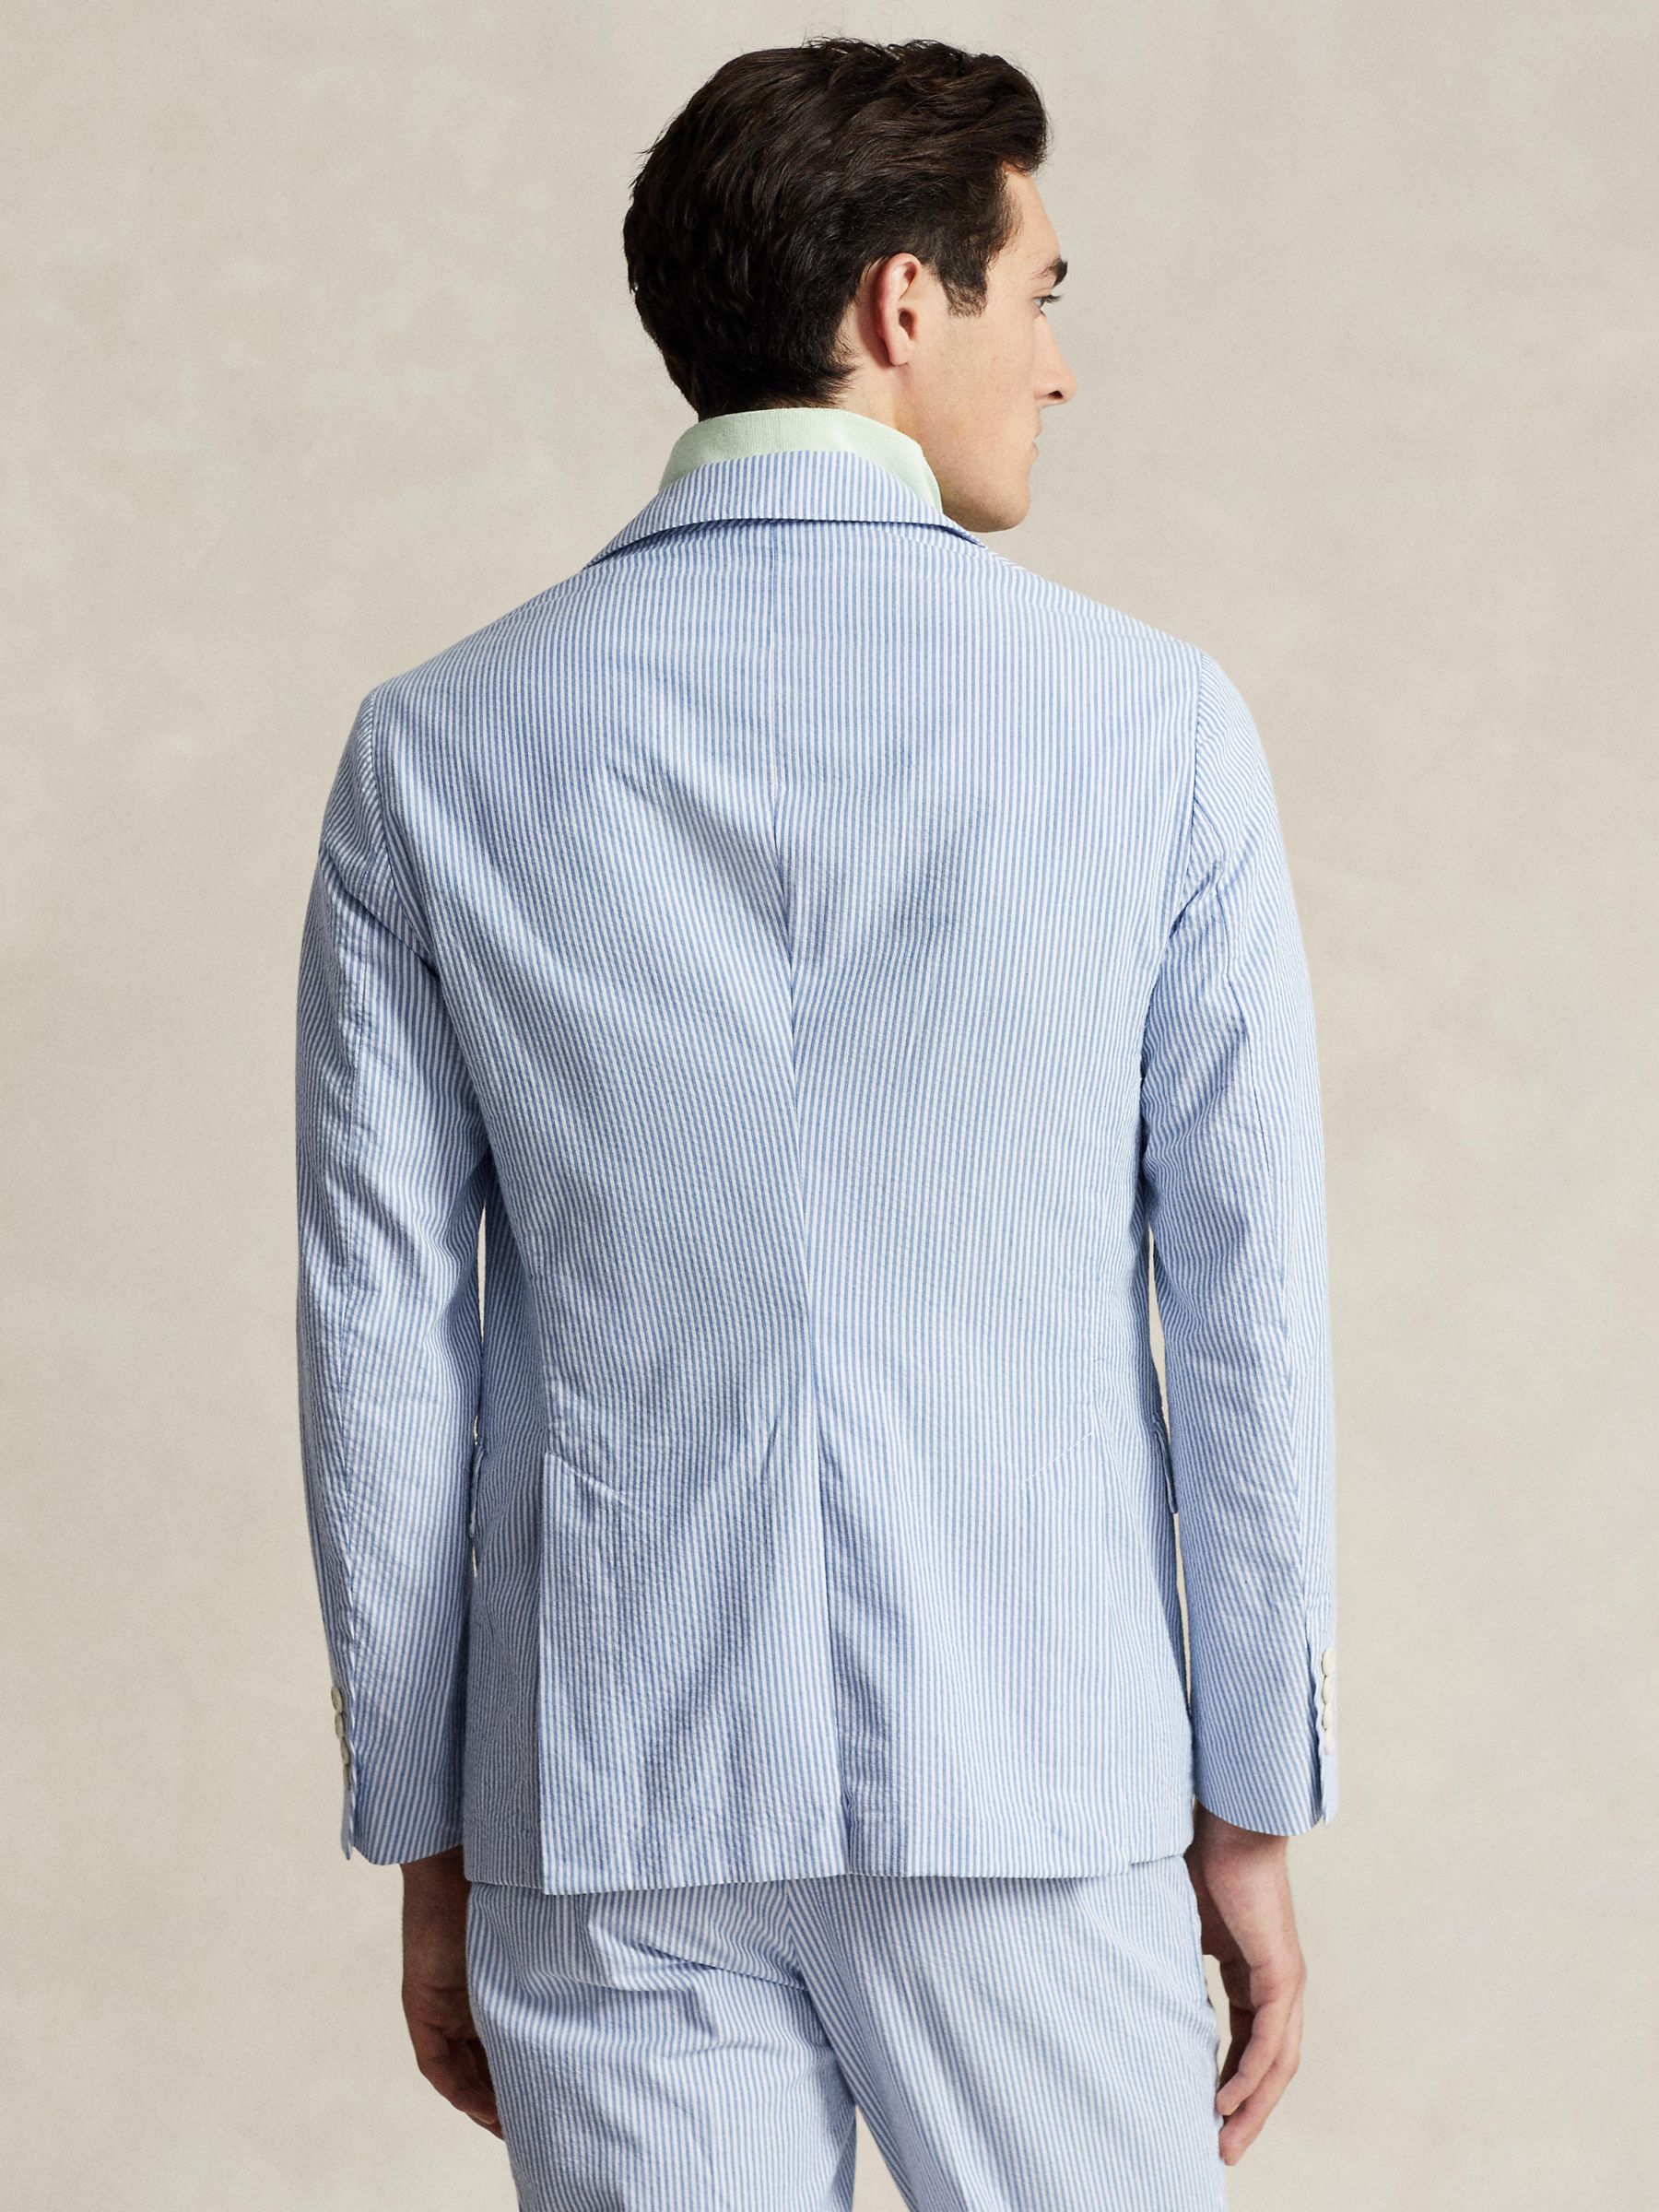 Buy Ralph Lauren Soft Modern Seersucker Suit Jacket, Bright Blue/White Online at johnlewis.com